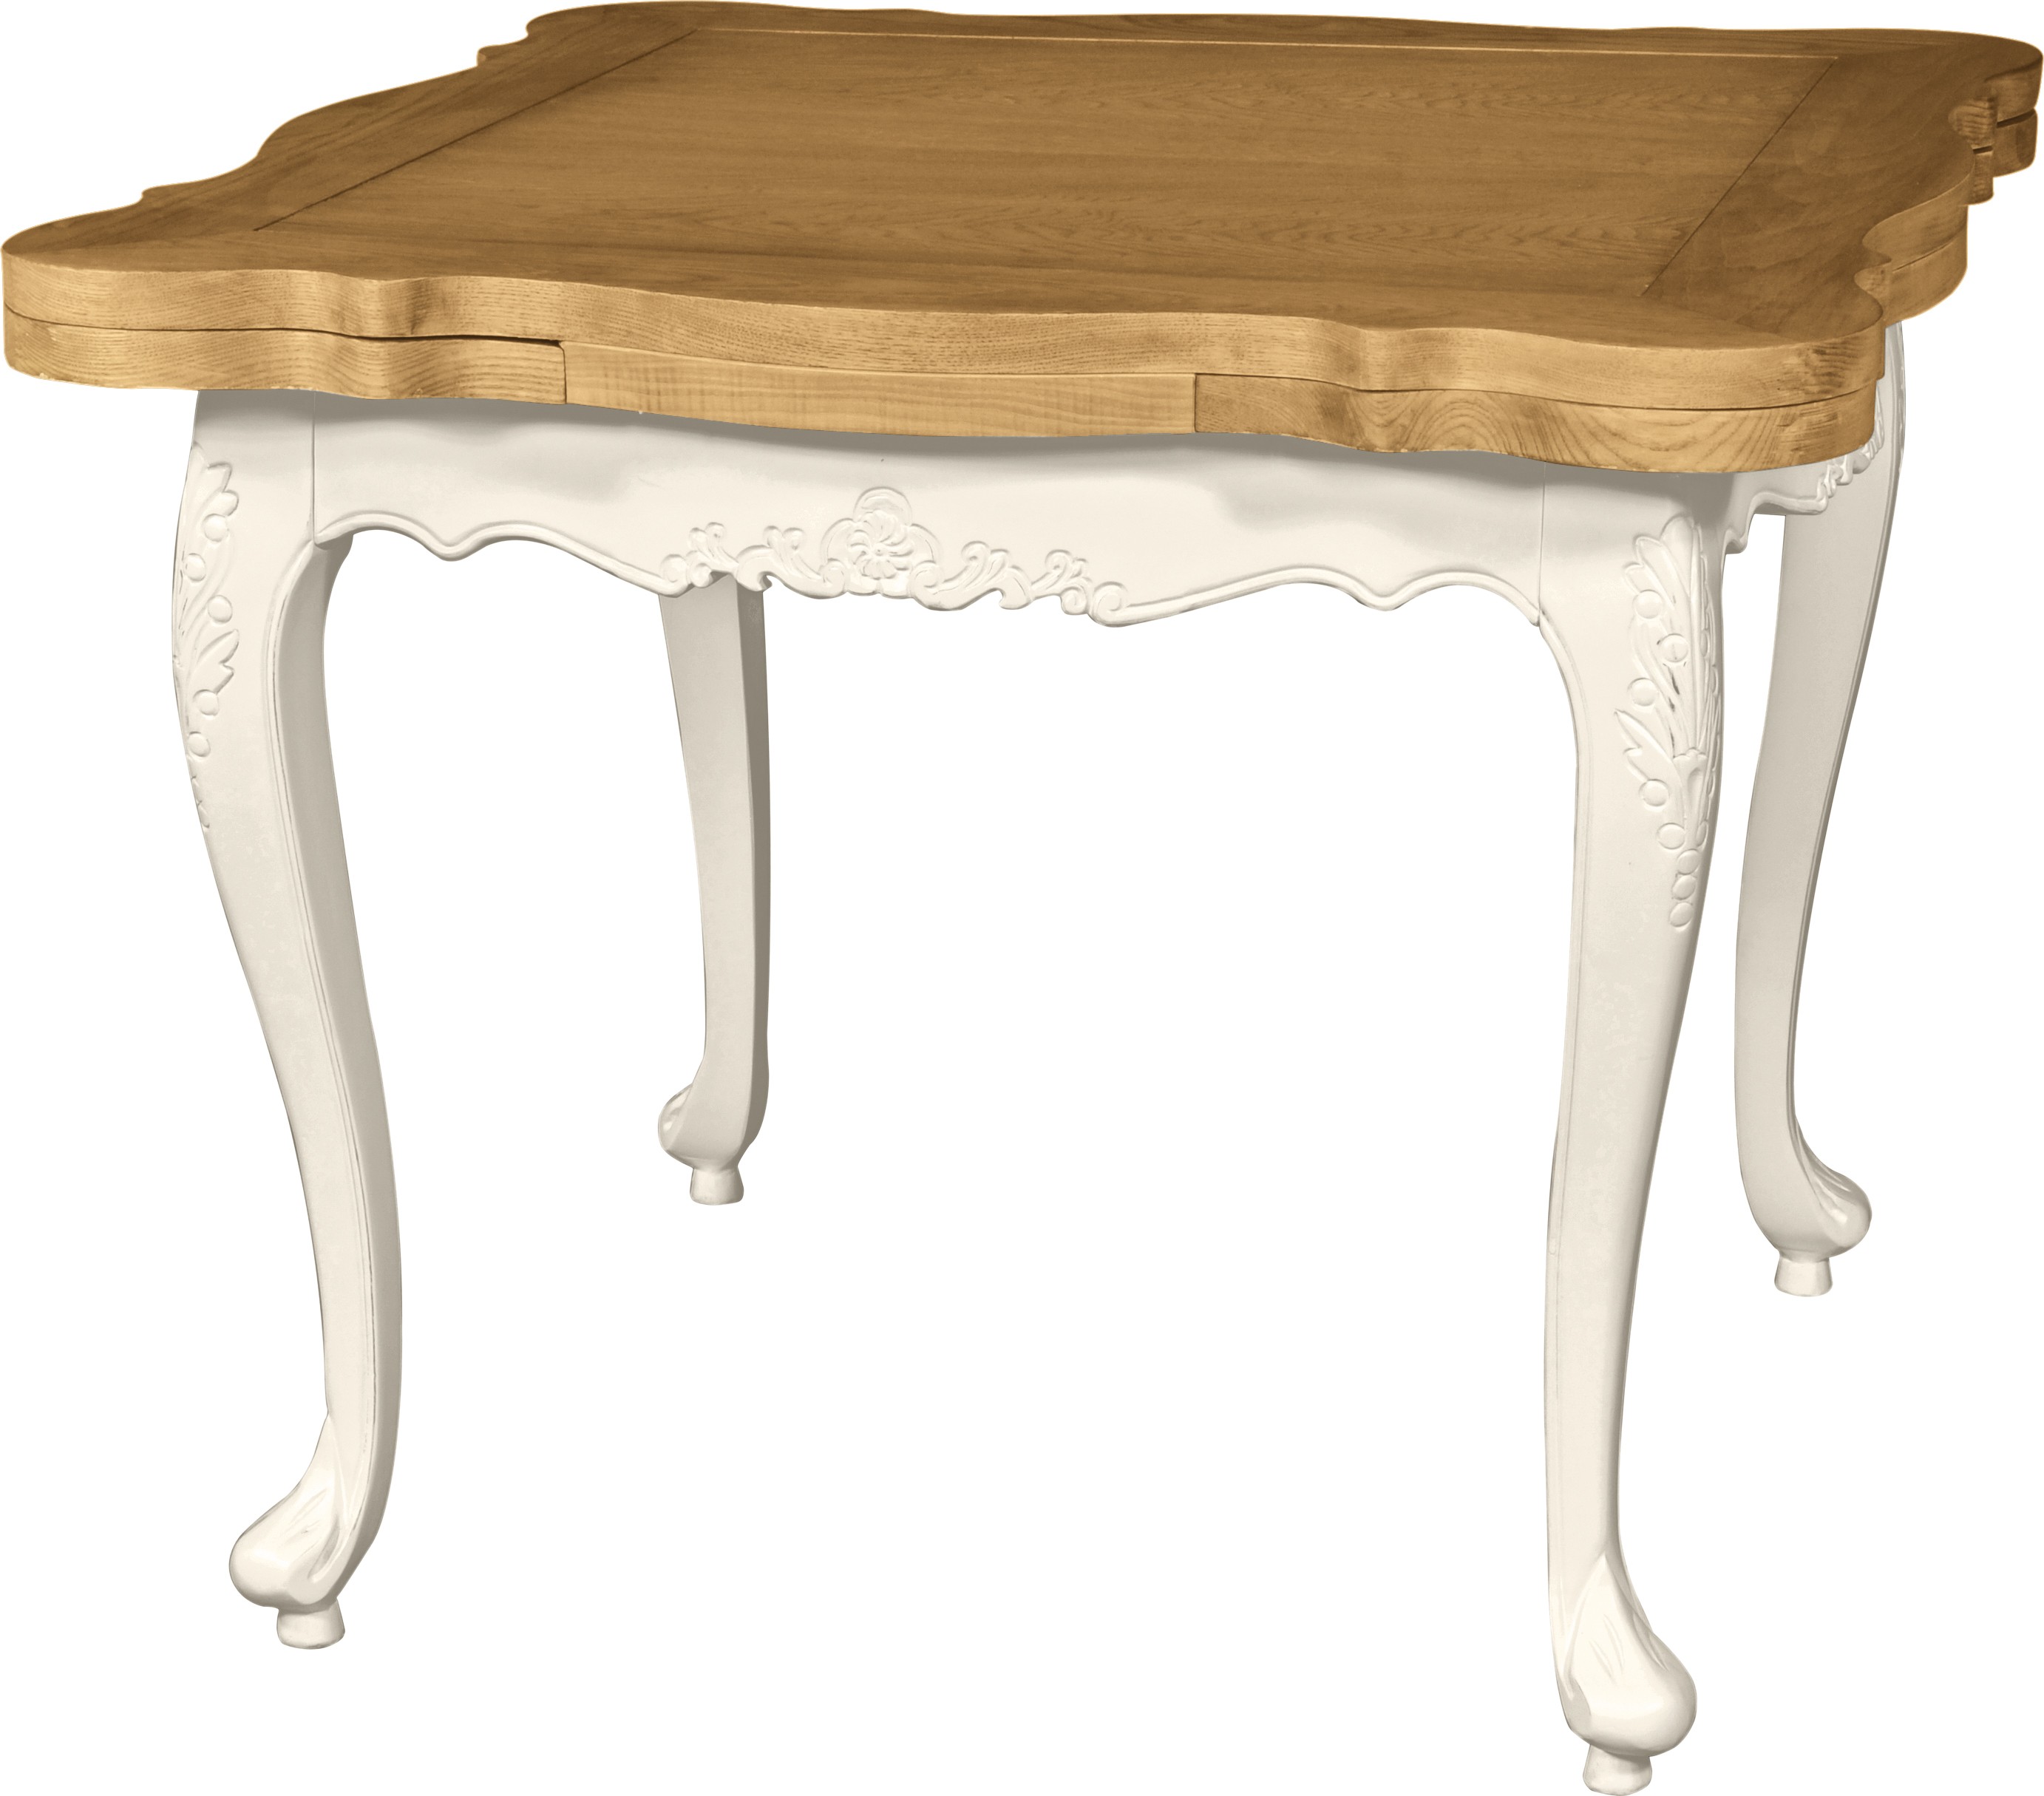 Estila Rozkládací provence čtvercový jídelní stůl vyrezávaný Preciosa v bílé barvě s přírodně hnědou vrchní deskou 156cm